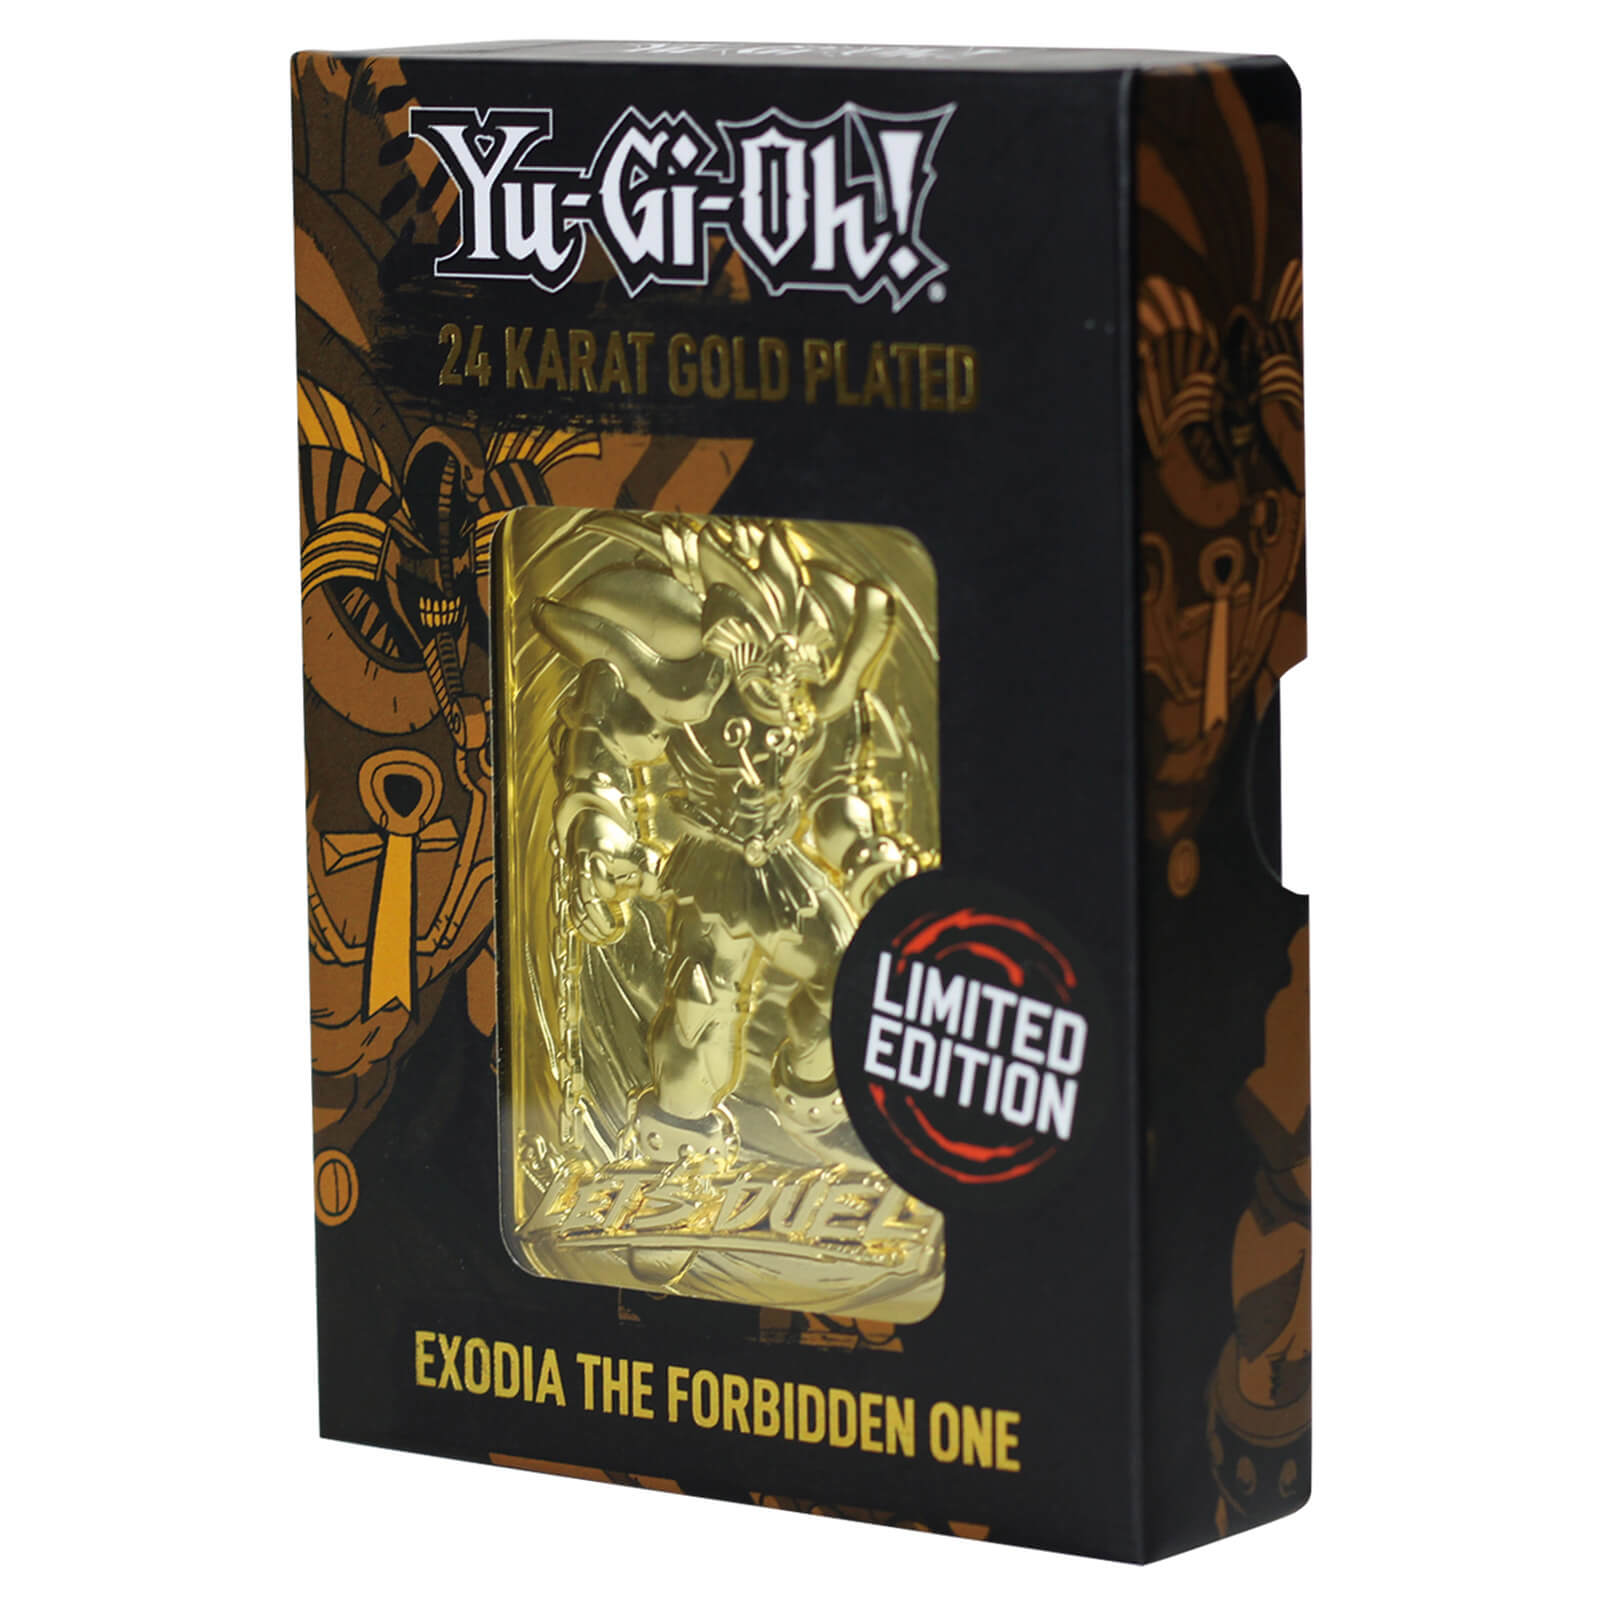 Carta Yu-Gi-Oh!Exodia -The Forbidden One bañada en oro de 24 quilates